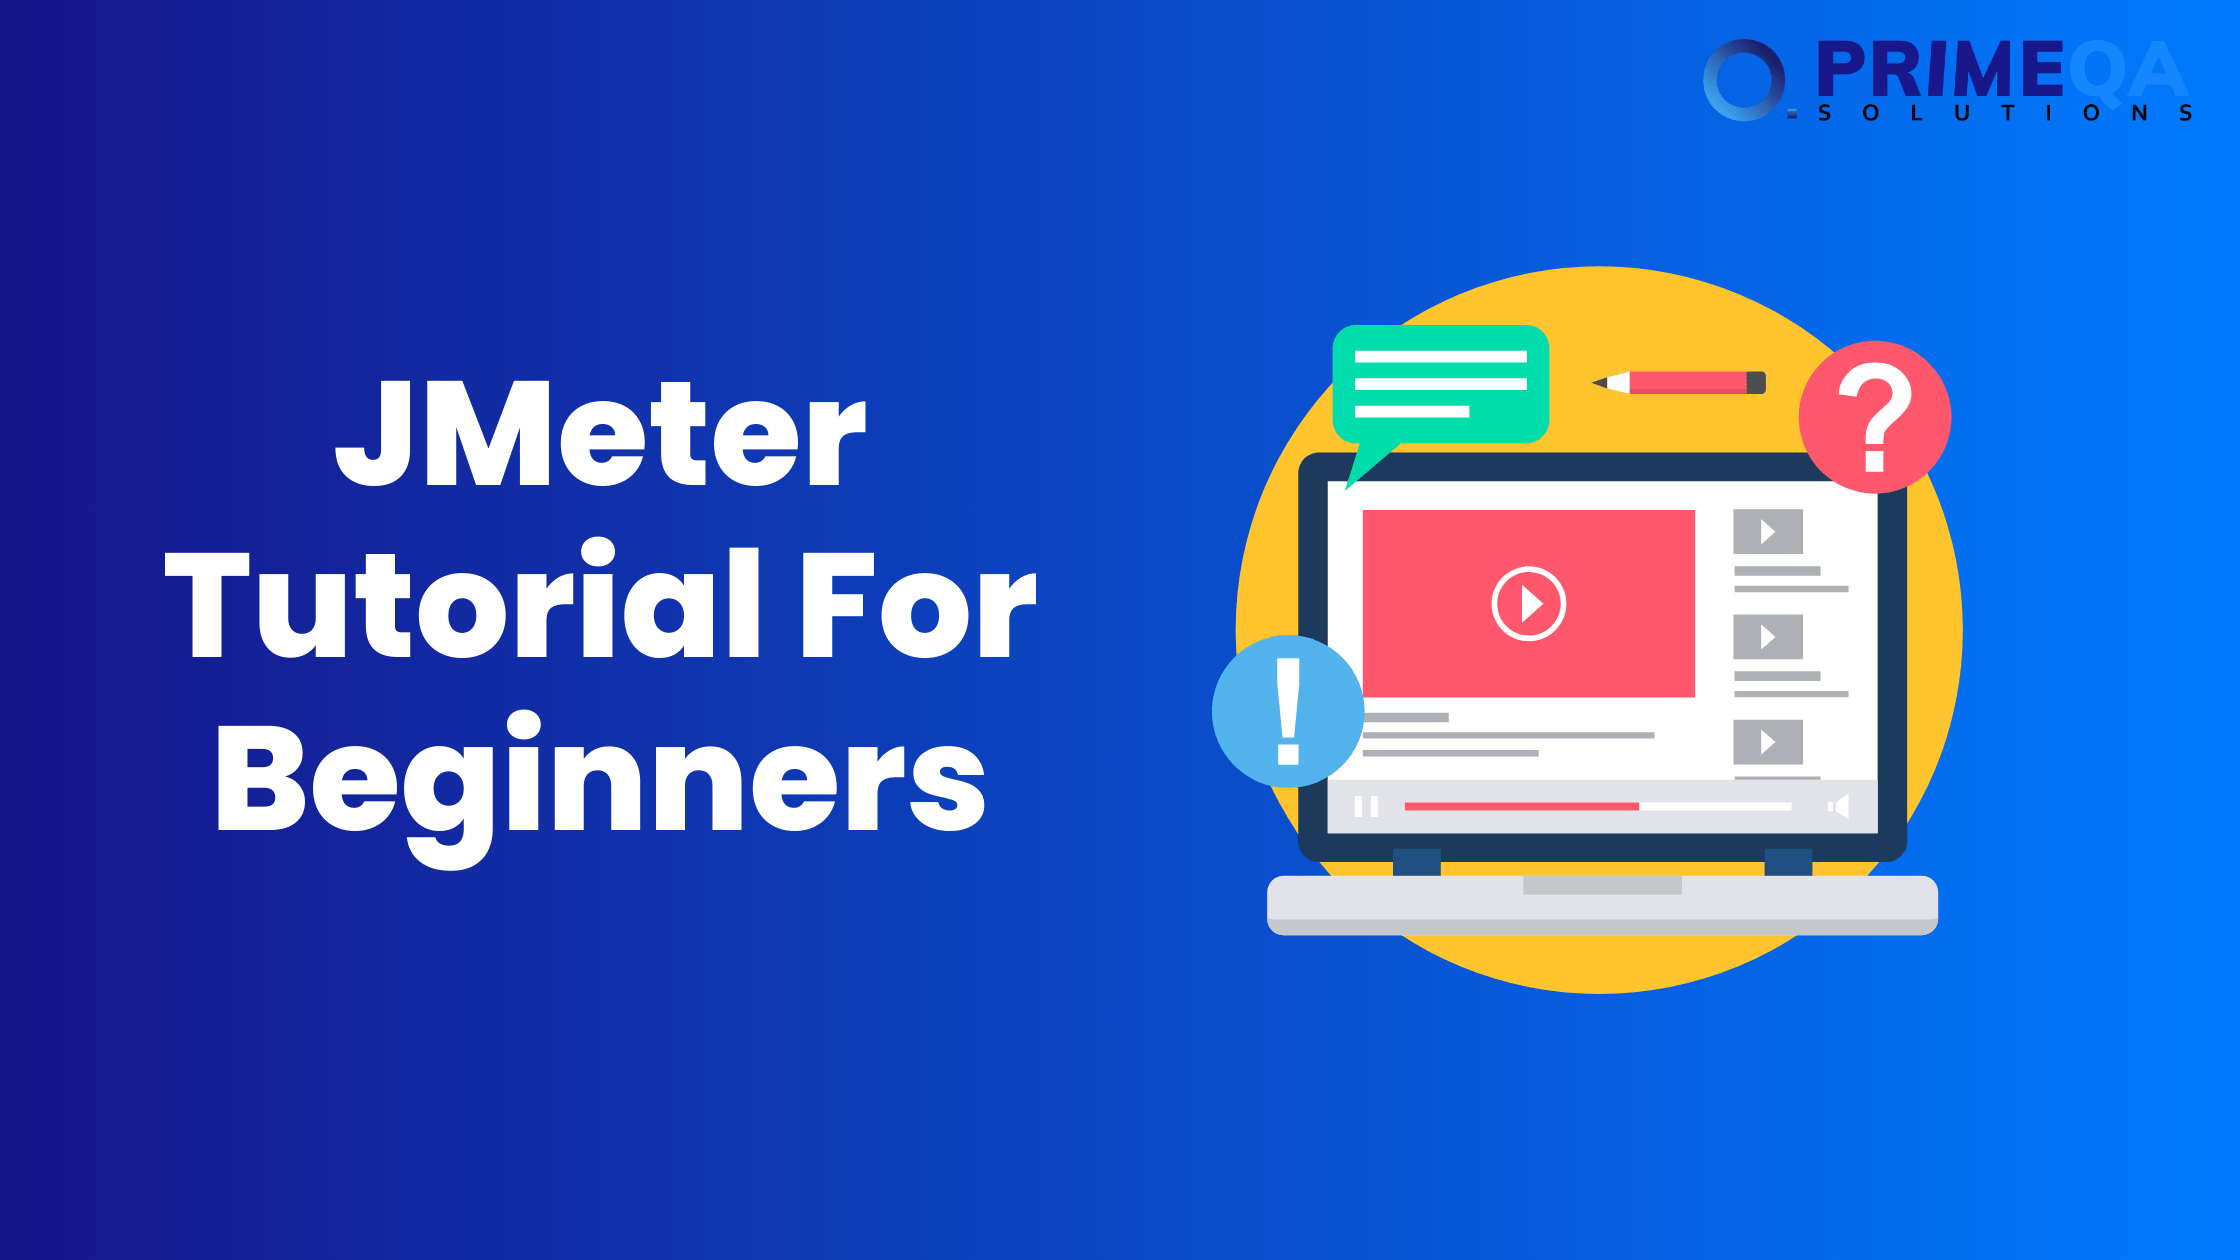 JMeter Tutorial For Beginners